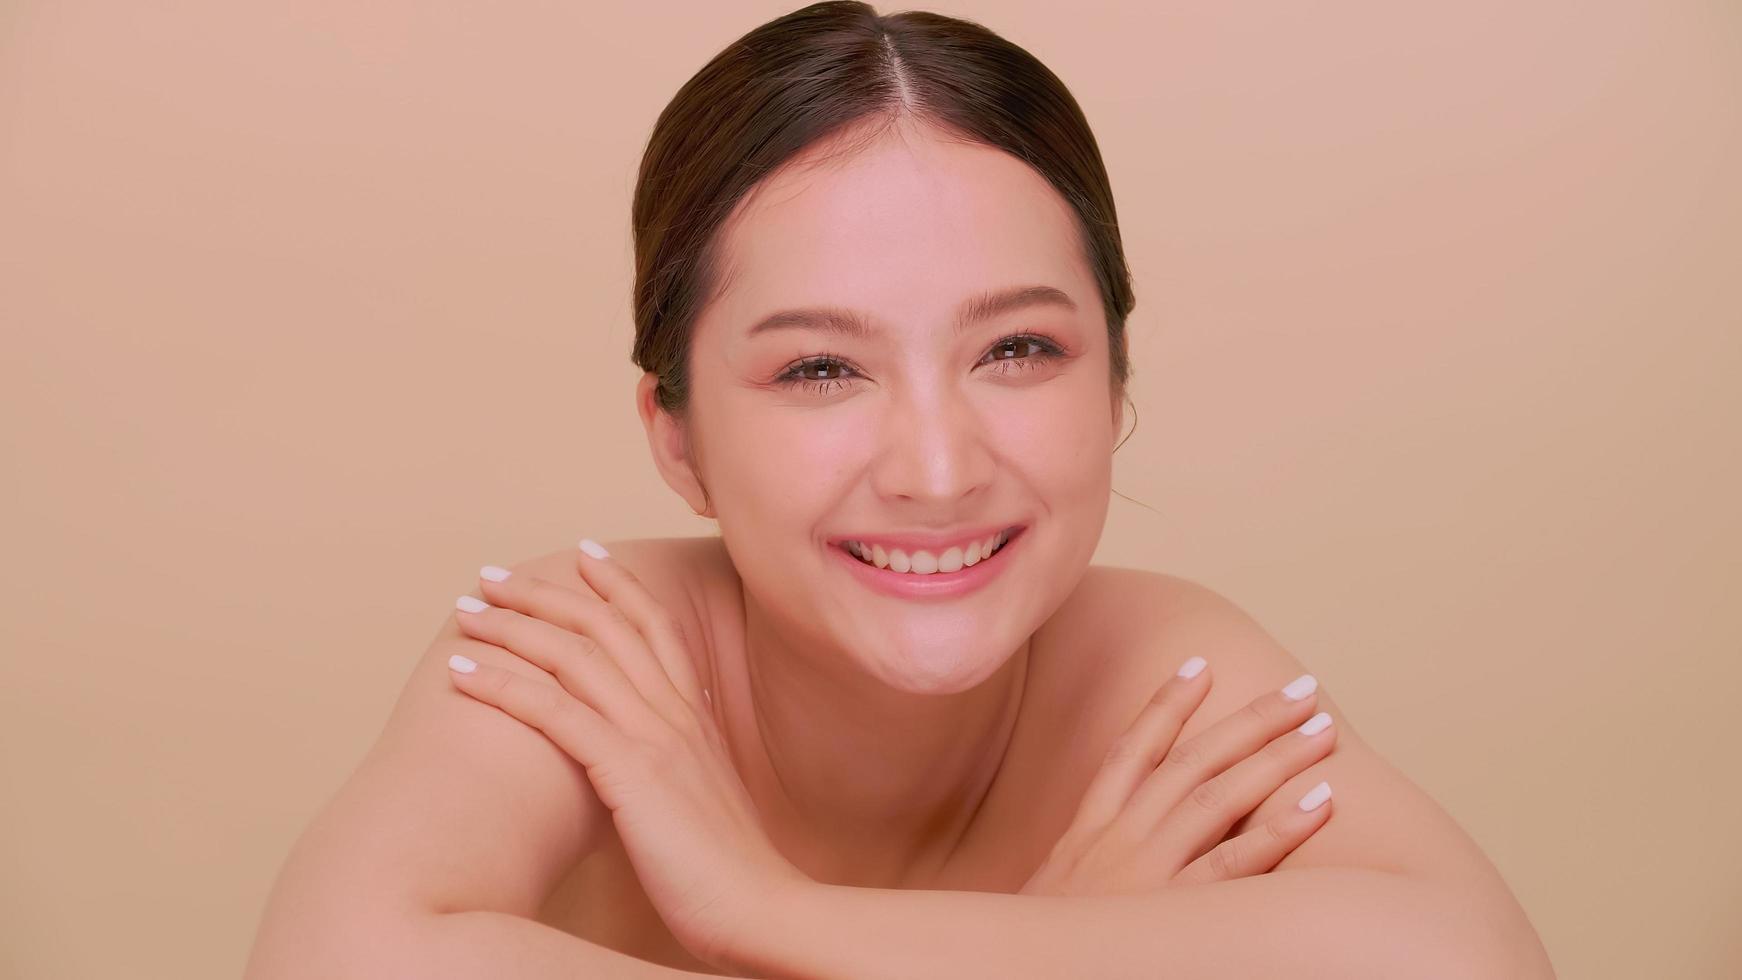 schönes gesicht der asiatischen jungen frau mit natürlicher haut. Porträt eines attraktiven Mädchens mit weichem Make-up und perfekt schöner Haut. foto